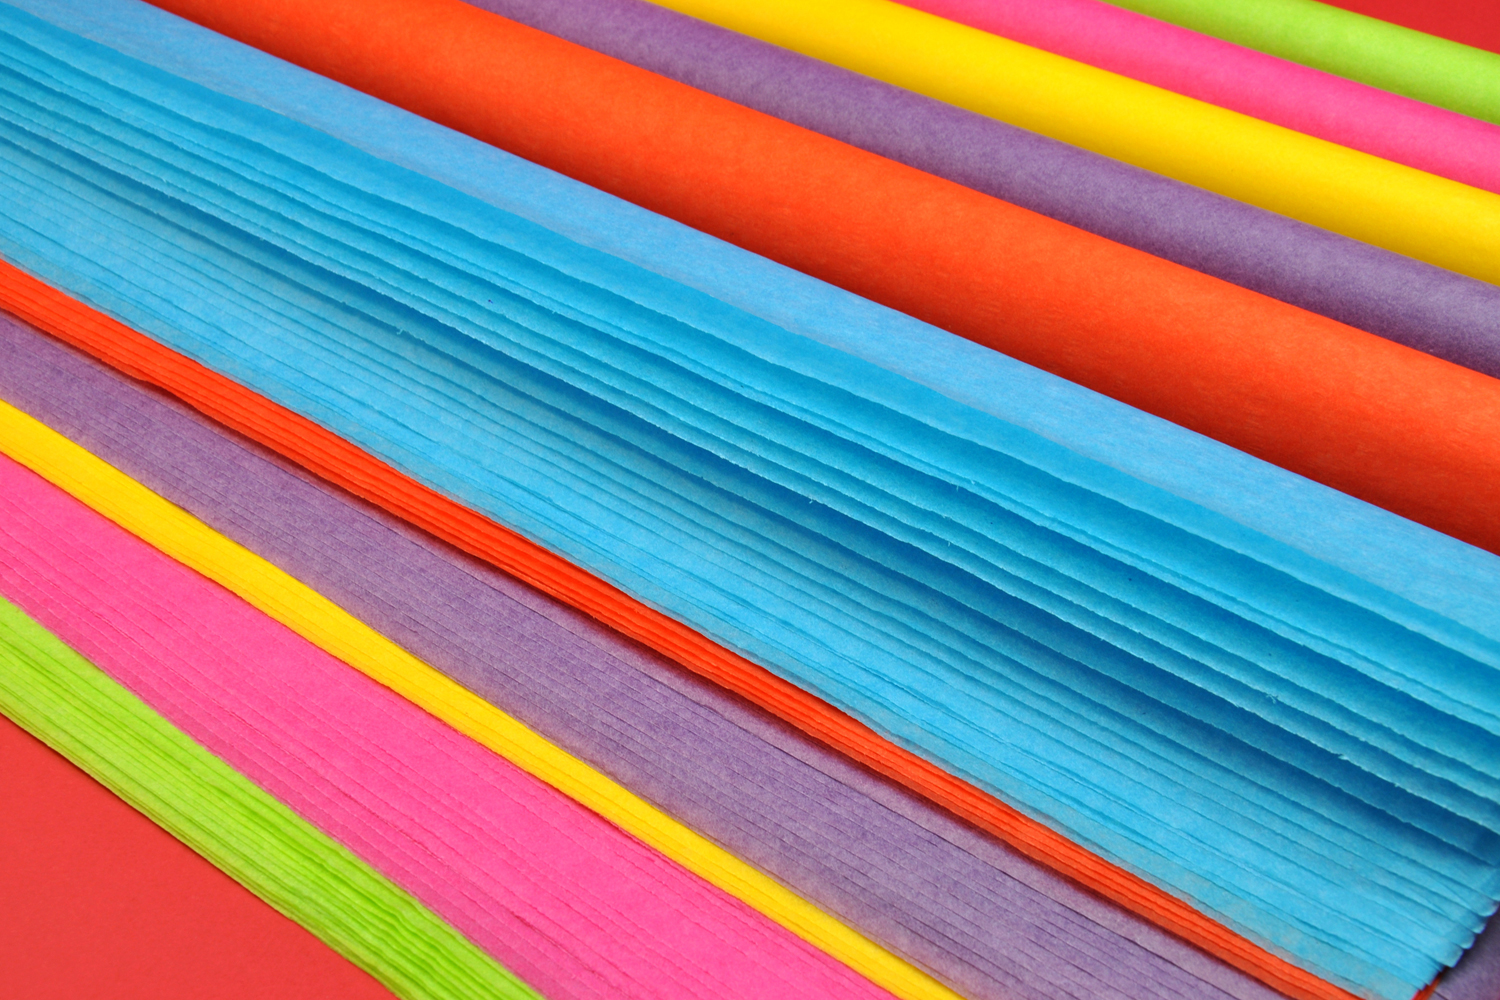 Pochette de 30 feuilles de plastique fou couleurs assorties : transparent,  jaune, rouge, vert et noi